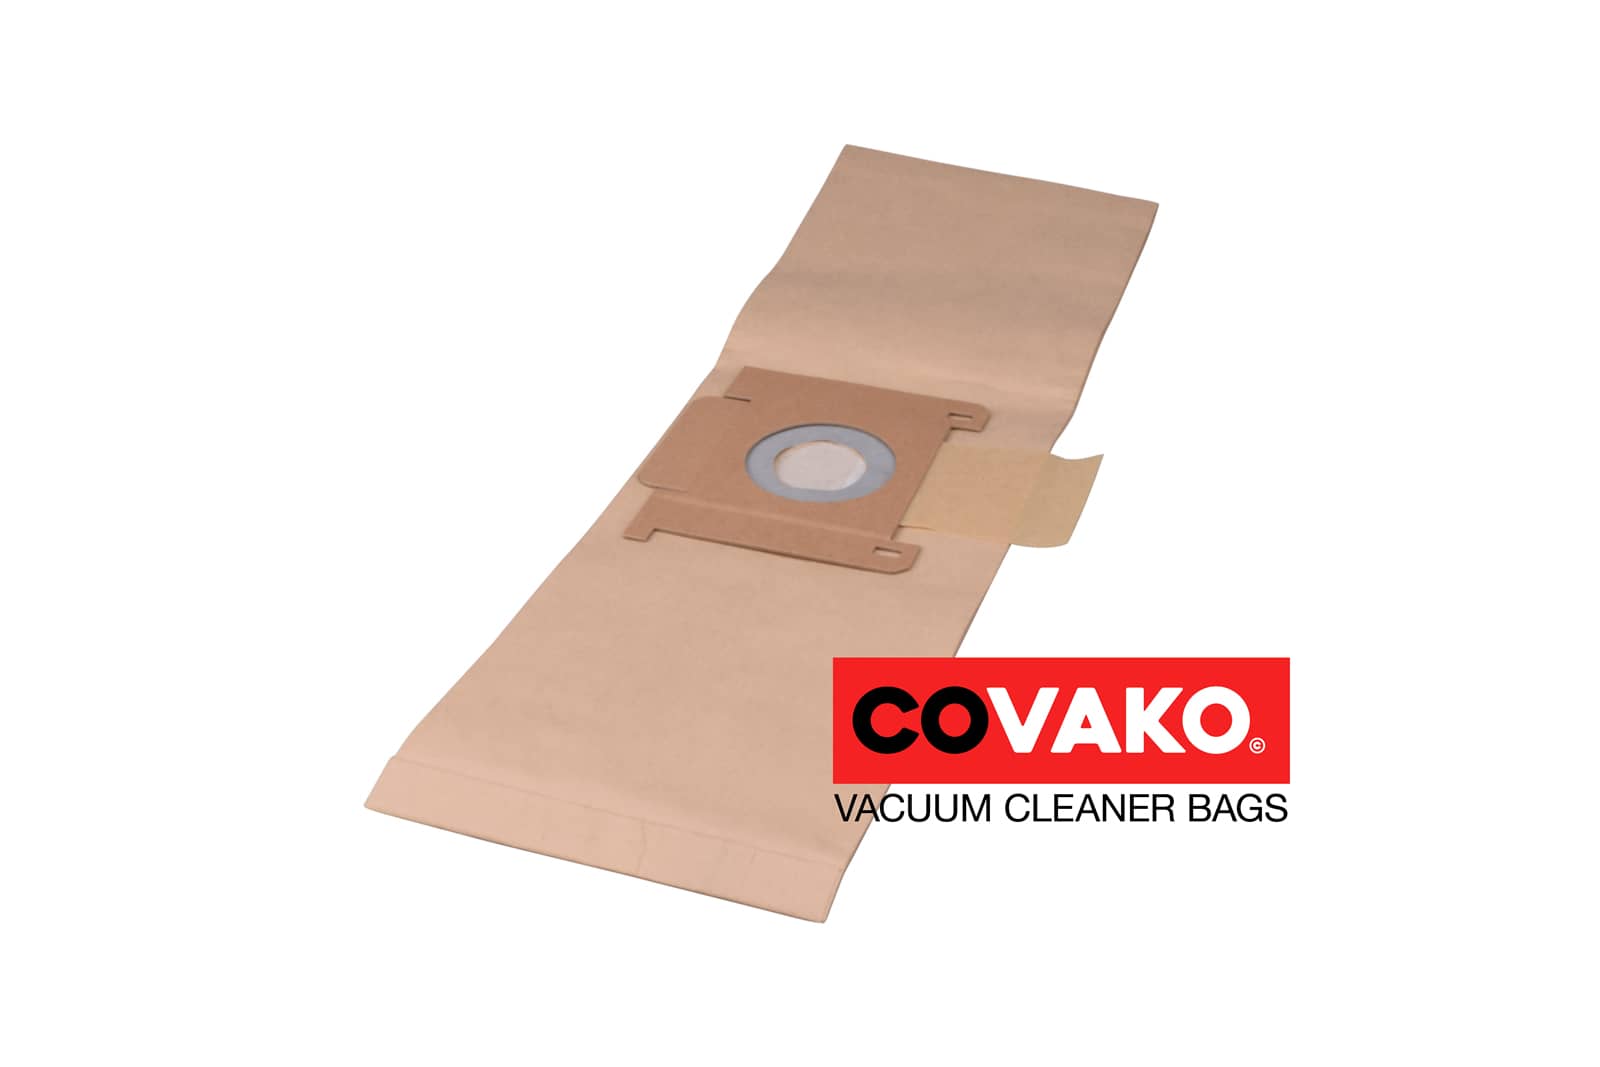 Kenbo tito 6 / Paper - Kenbo vacuum cleaner bags